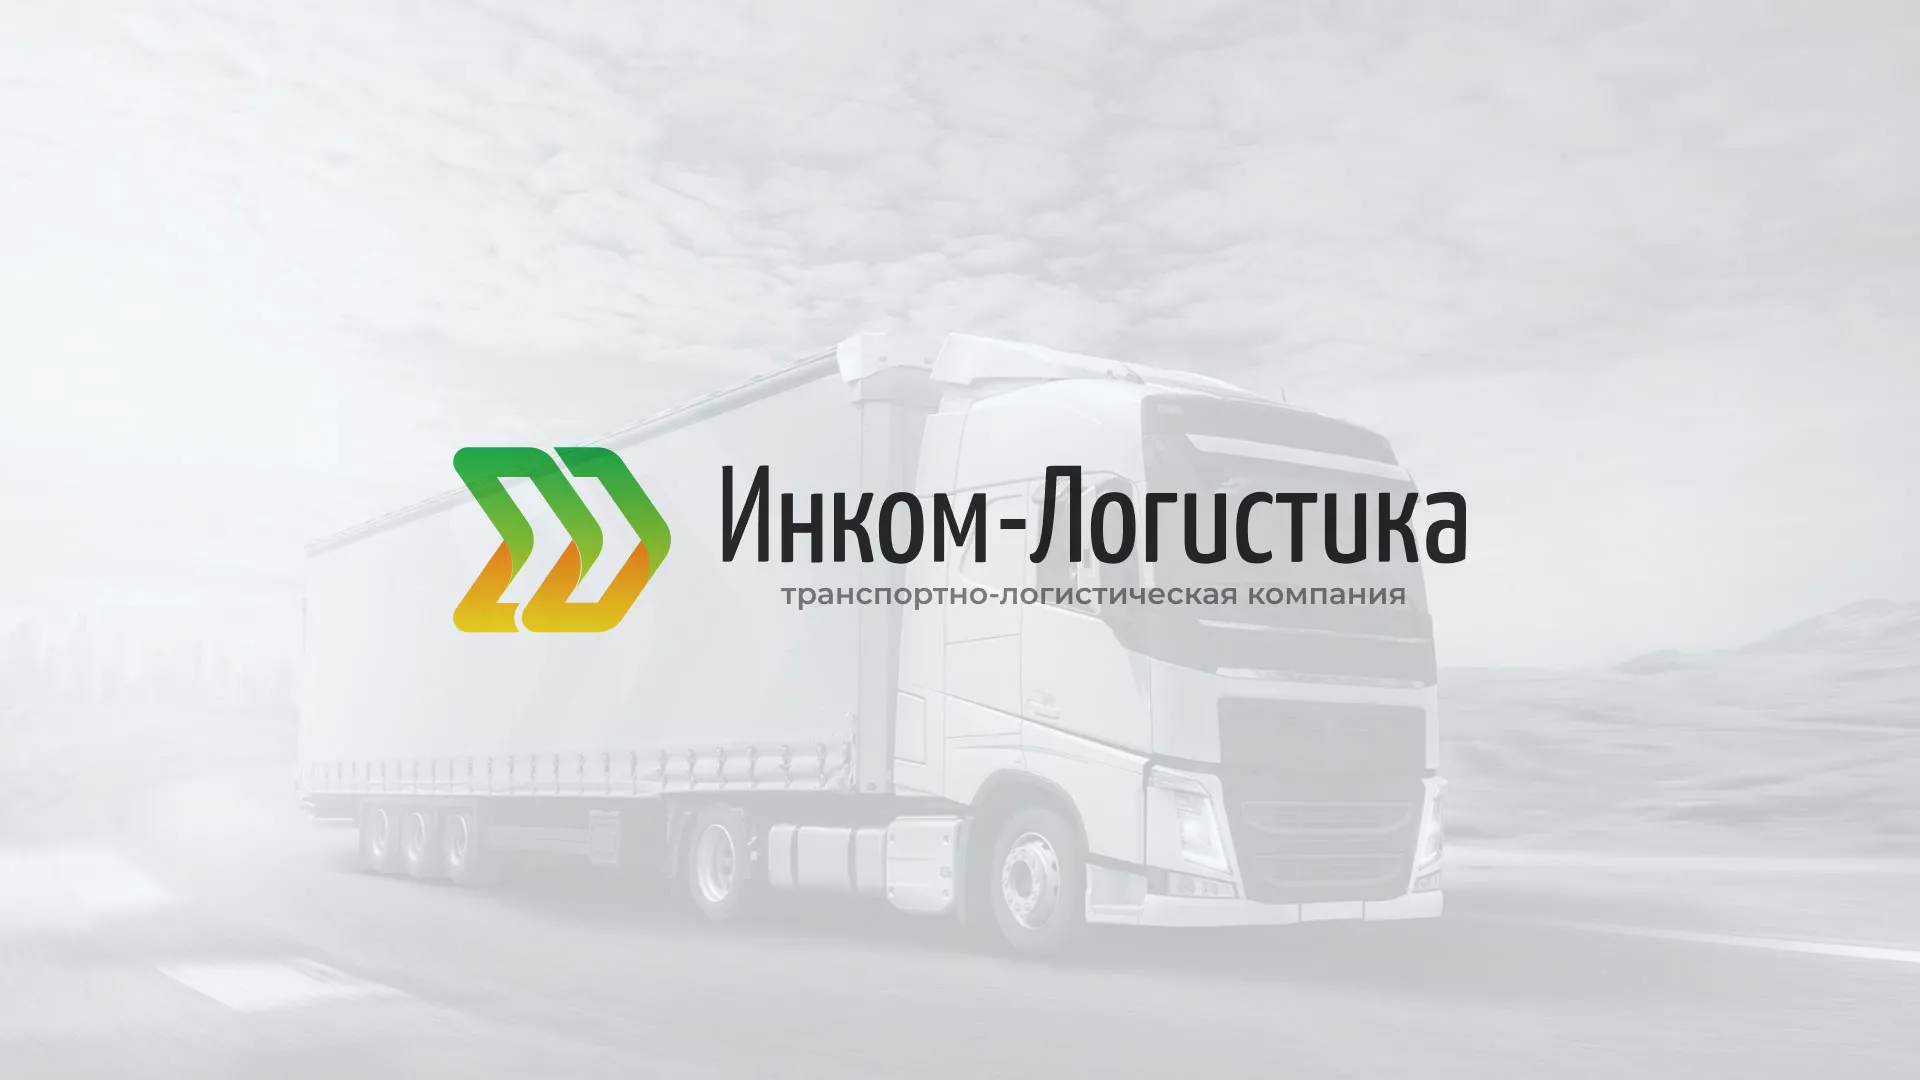 Разработка логотипа и сайта компании «Инком-Логистика» в Екатеринбурге